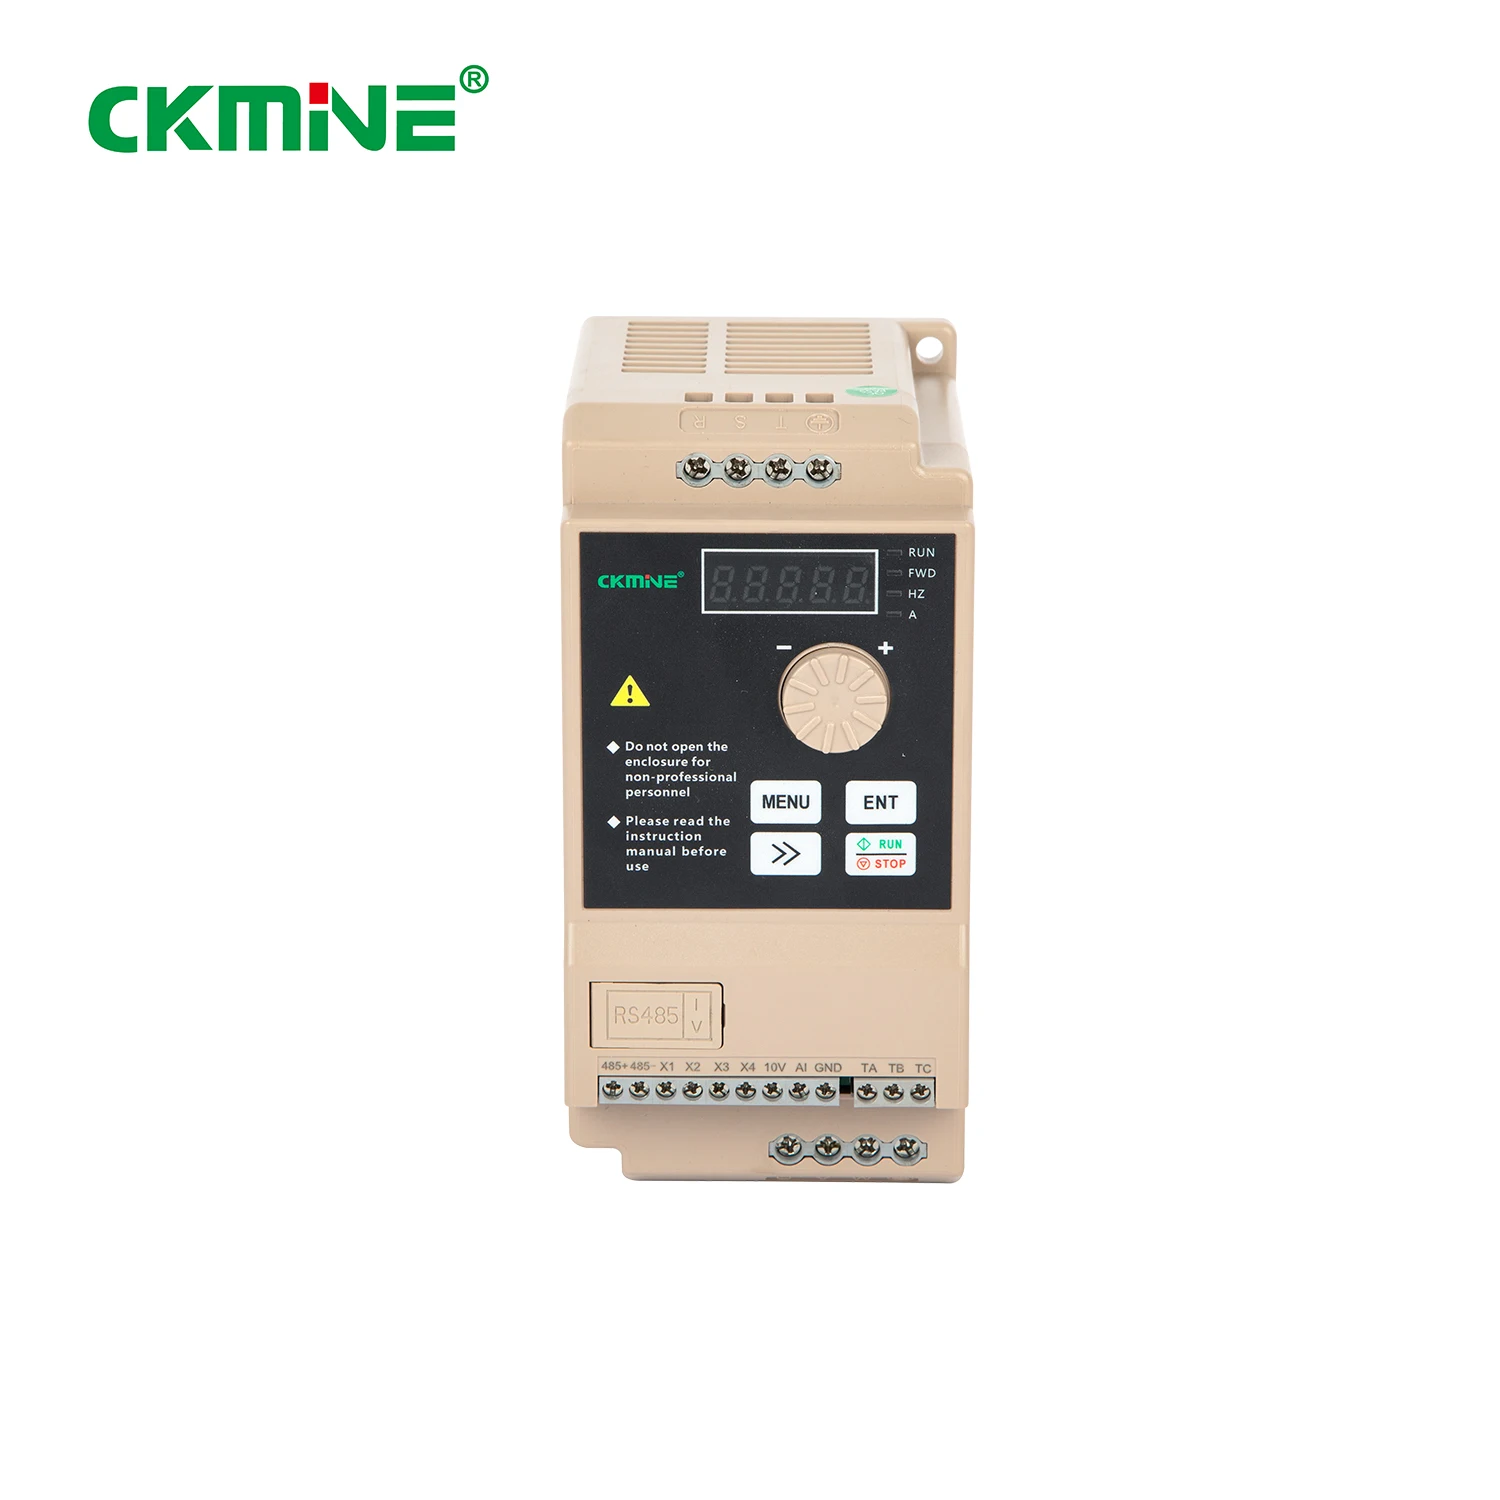 CKMINE 汎用 3 相 220V 低価格 VFD インバーター 1.5kW 2HP 可変周波数ドライブ AC 50hz ～ 60hz モーター制御用